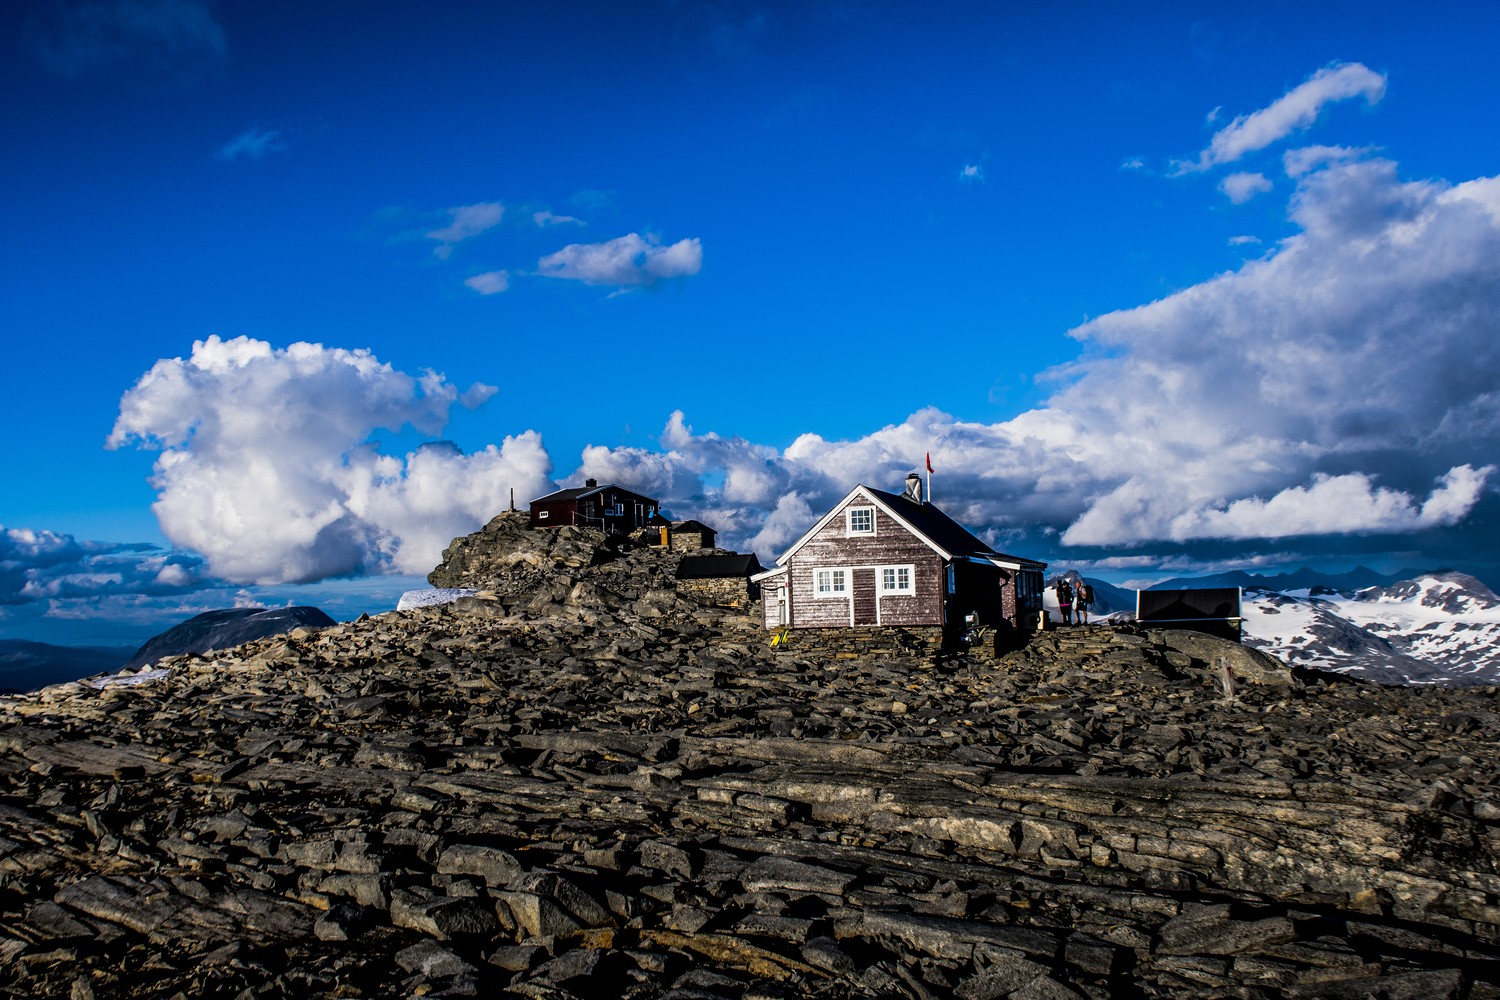 De hoogstgelegen bediende DNT-hut van Noorwegen is Fannaråkhytta, gelegen op 2.068m